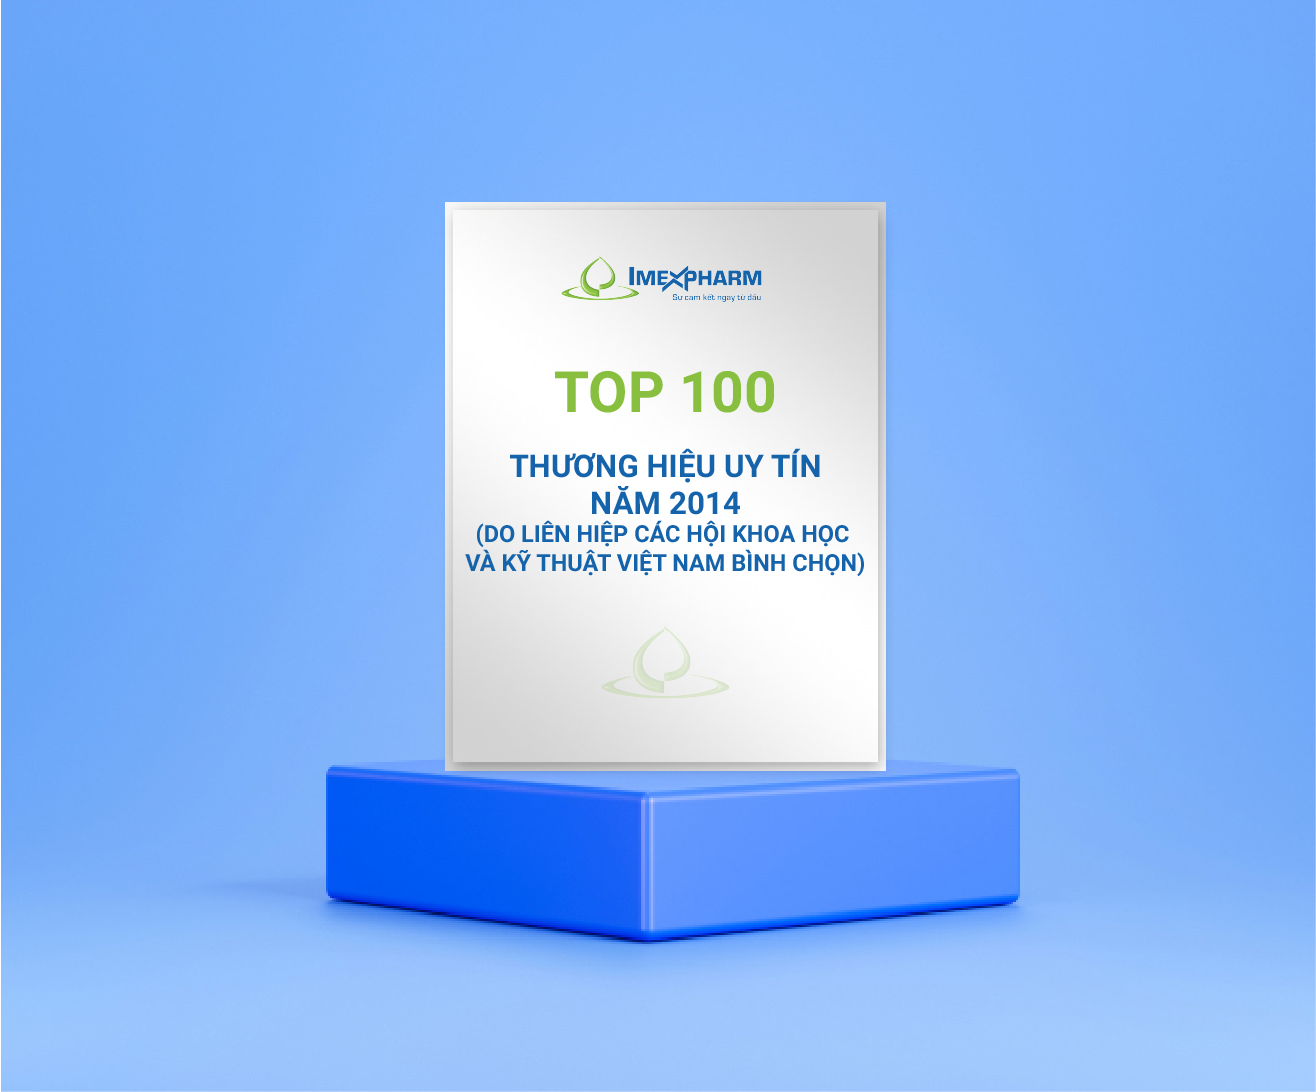 Top 100 thương hiệu uy tín năm 2014 (do liên hiệp các hội khoa học và kỹ thuật Việt Nam bình chọn).